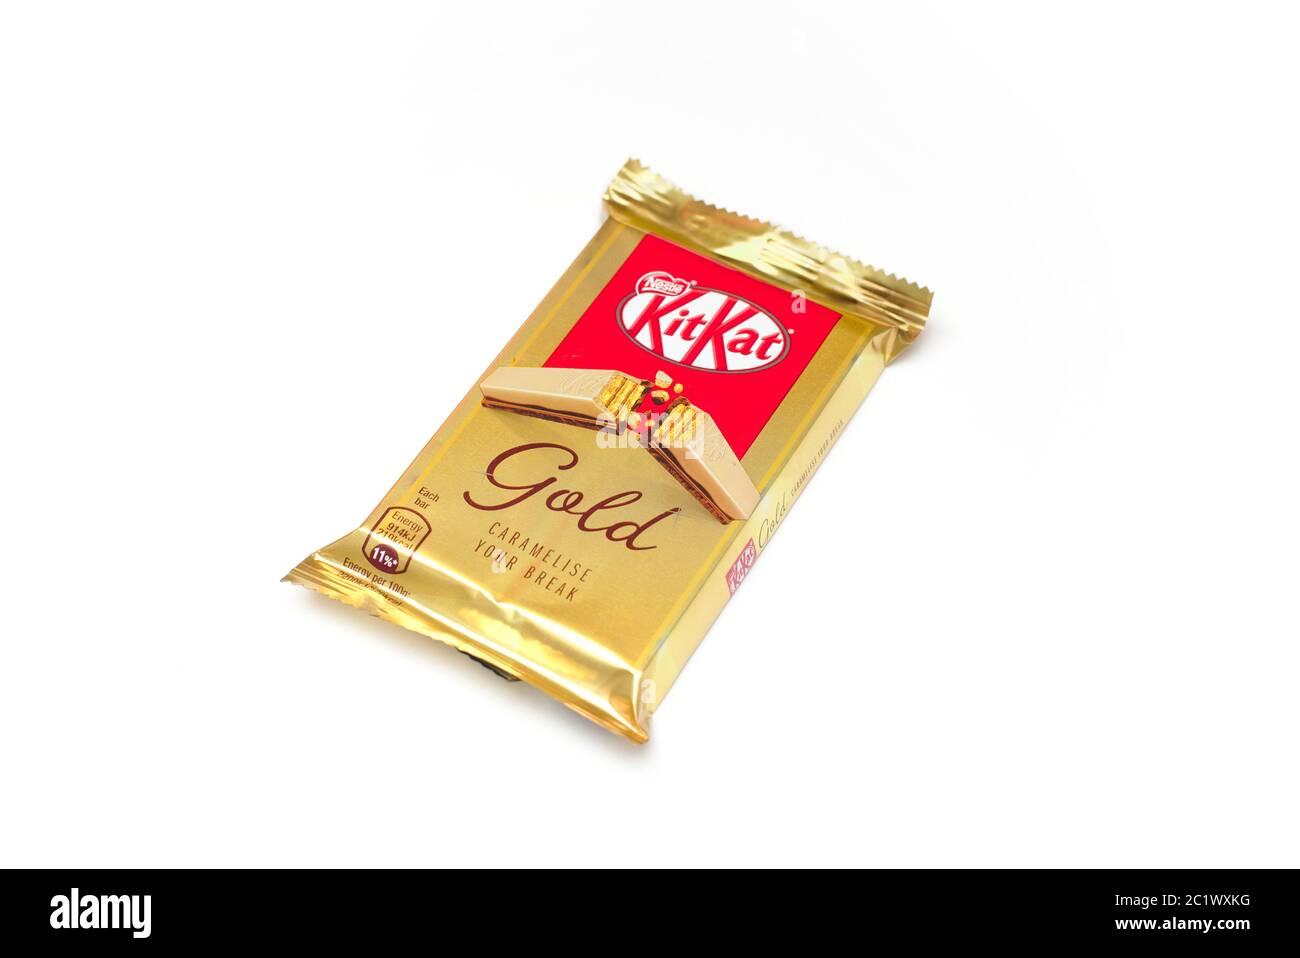 Kitkat golden break.com